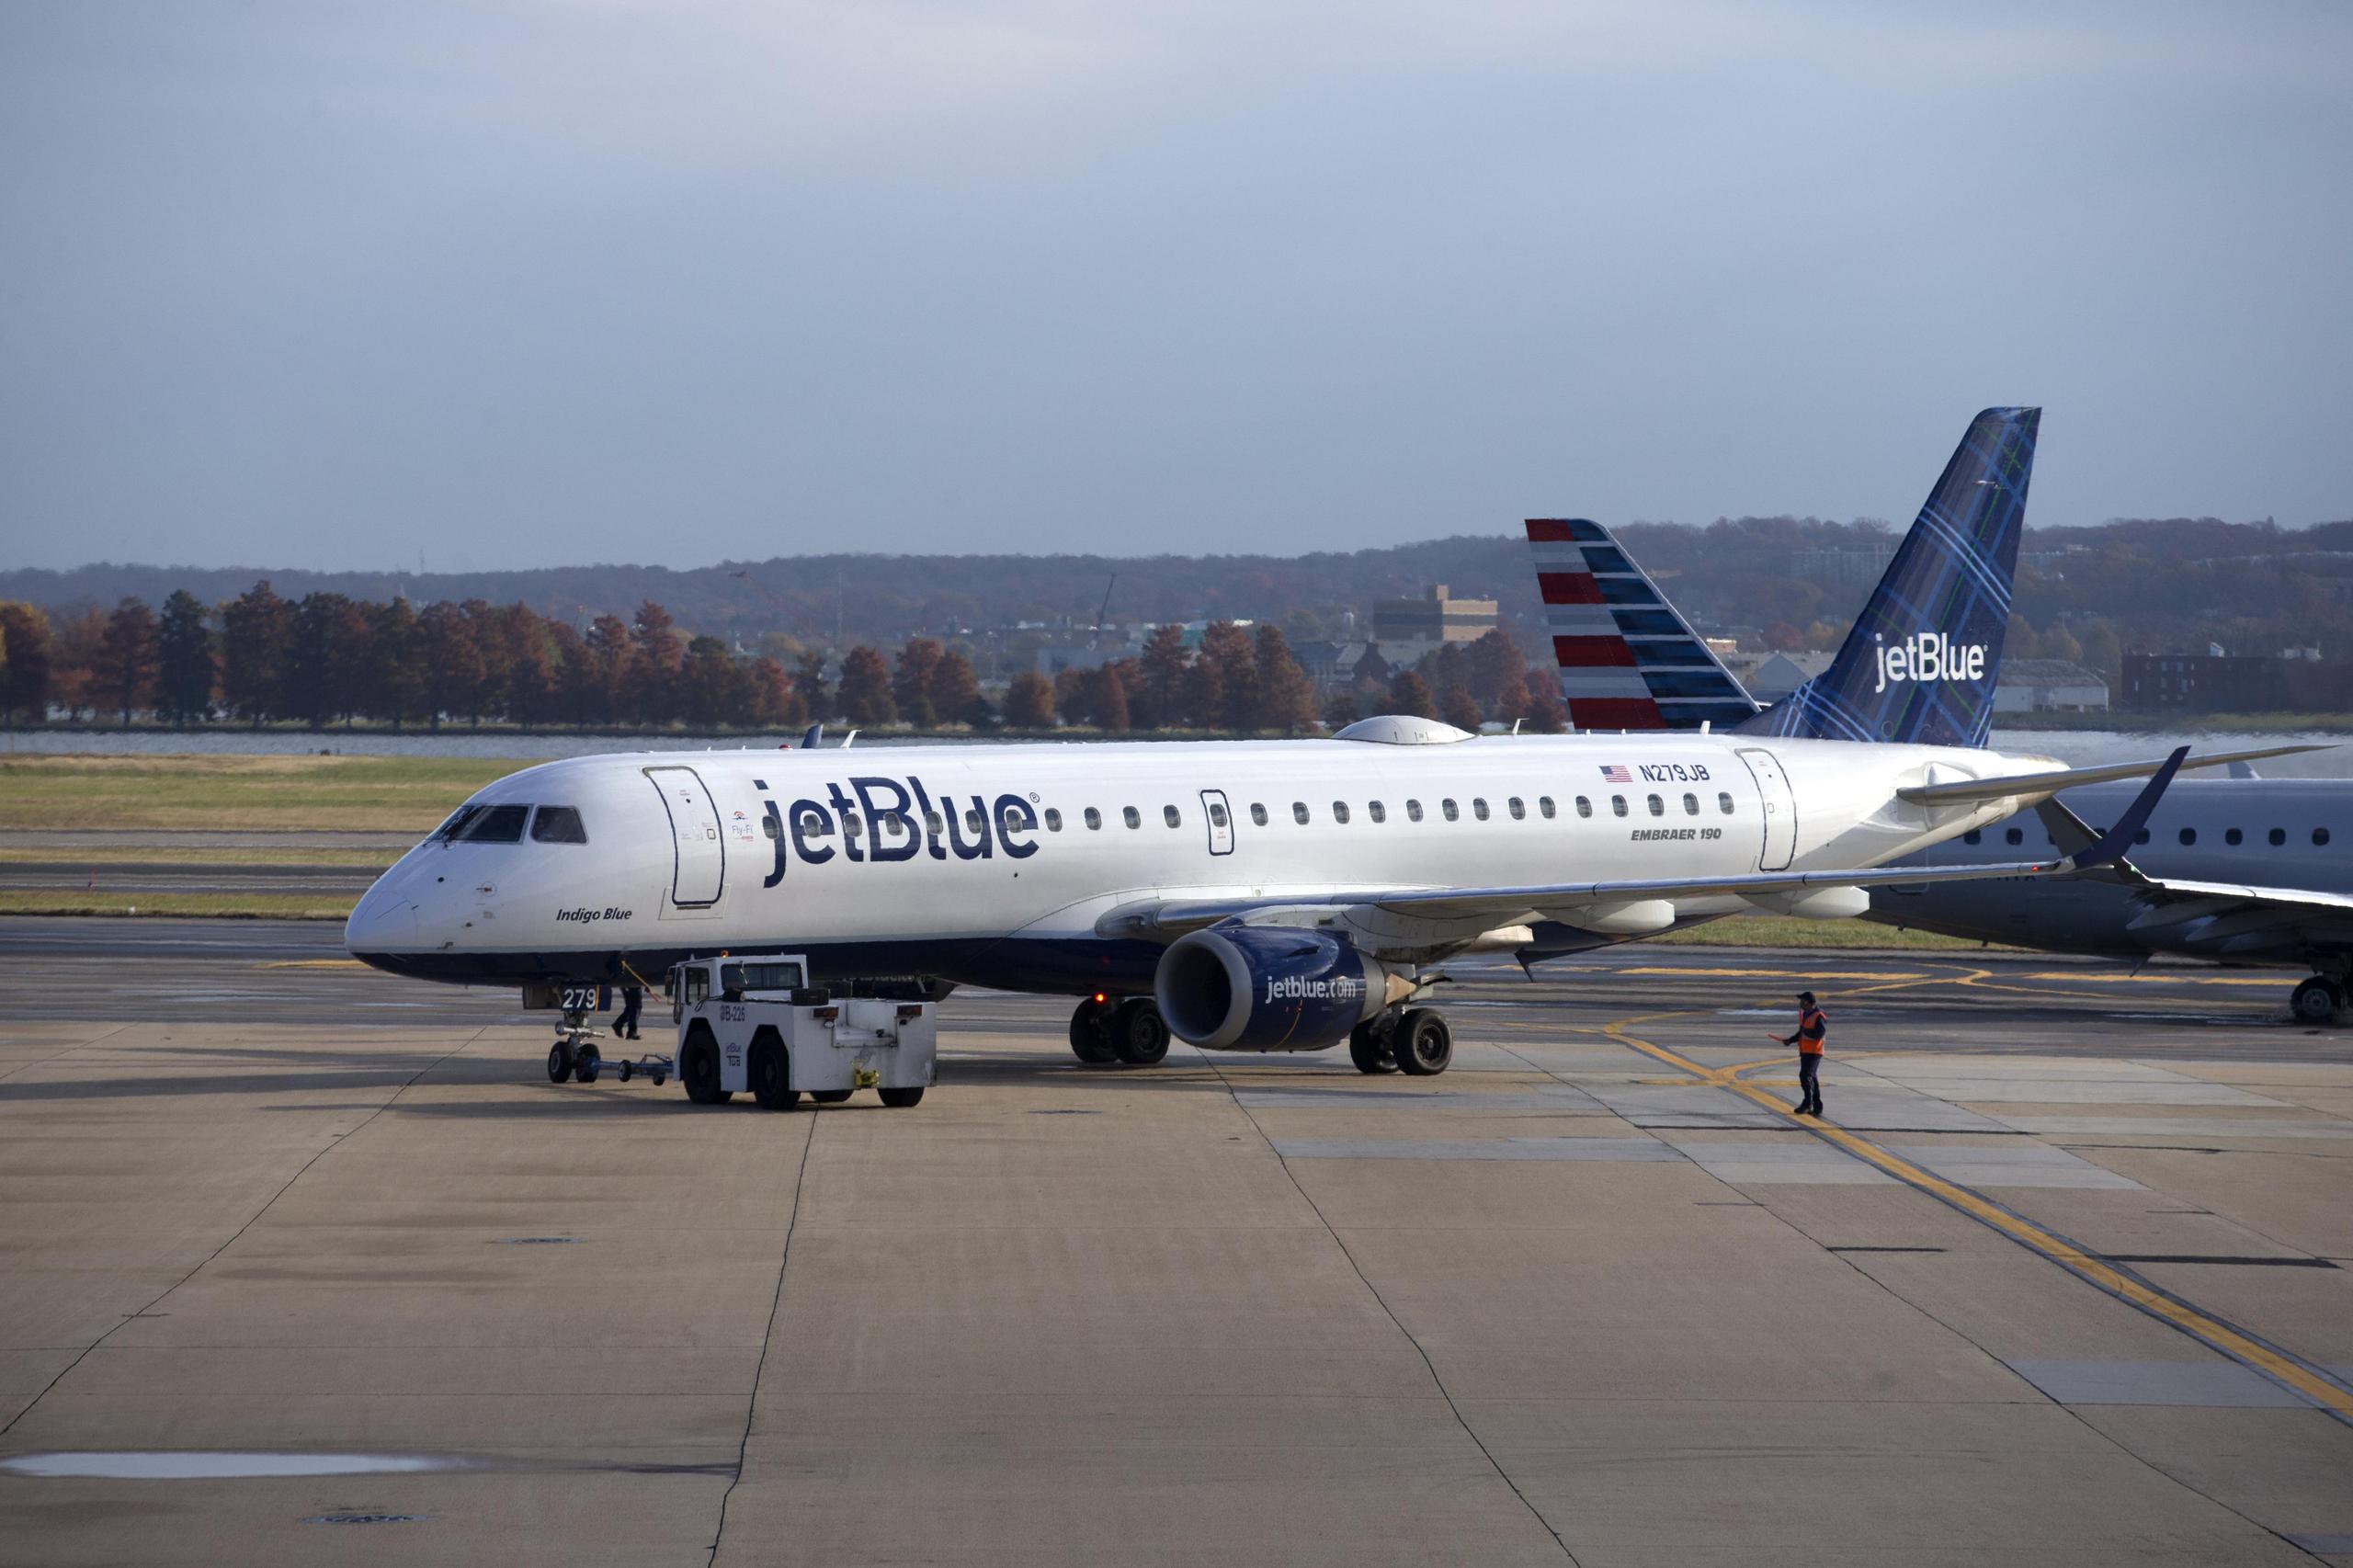 JetBlue asegura que su oferta es “claramente superior” y que el consejo de administración de Spirit la rechazó sin fundamentos y se negó a dialogar de manera constructiva. (EPA/MICHAEL REYNOLDS)